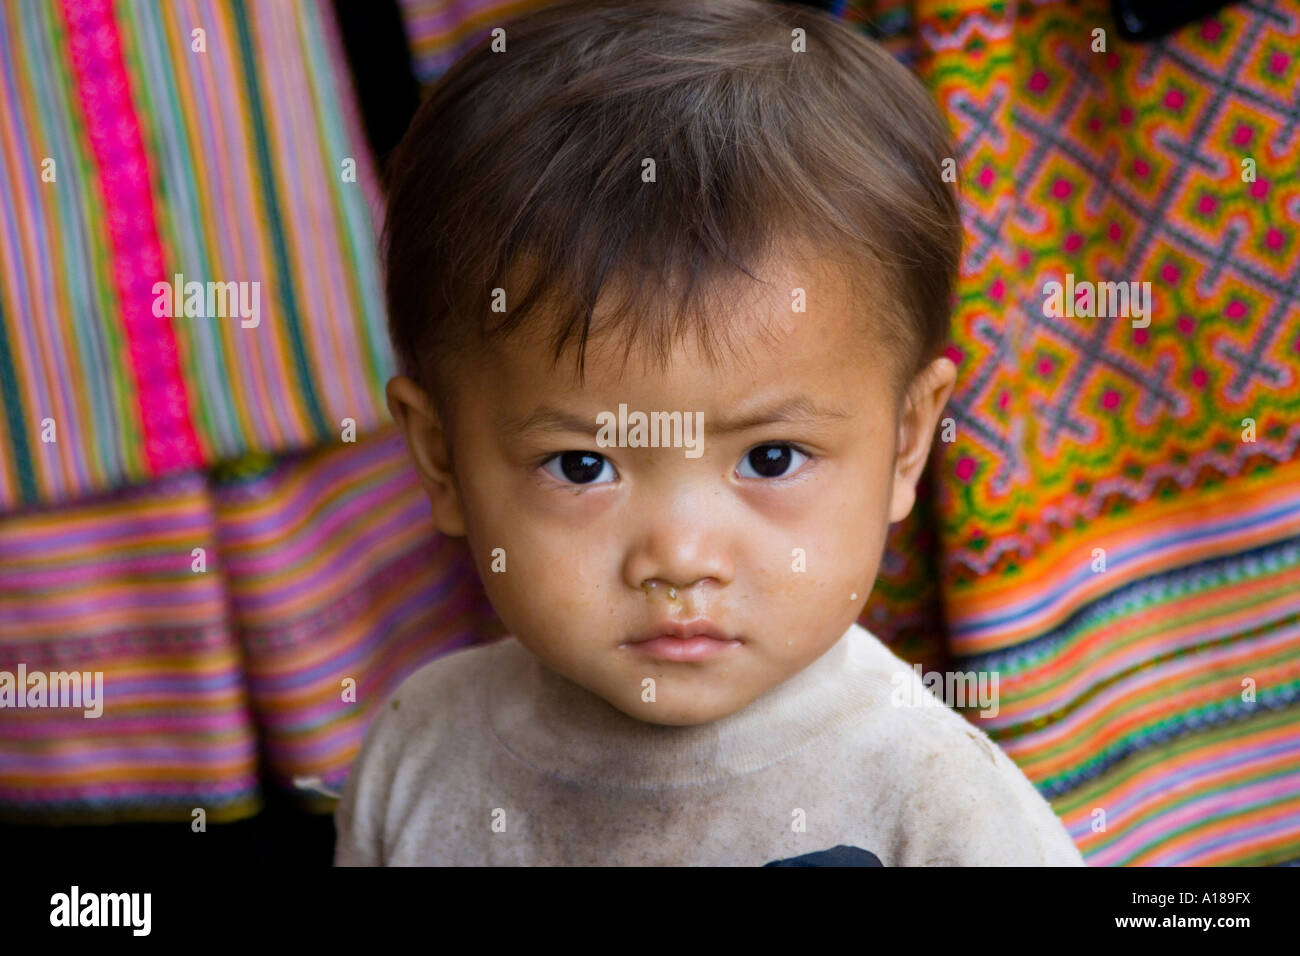 2007 Small Child at Bac Ha Market Near Sapa Vietnam Stock Photo